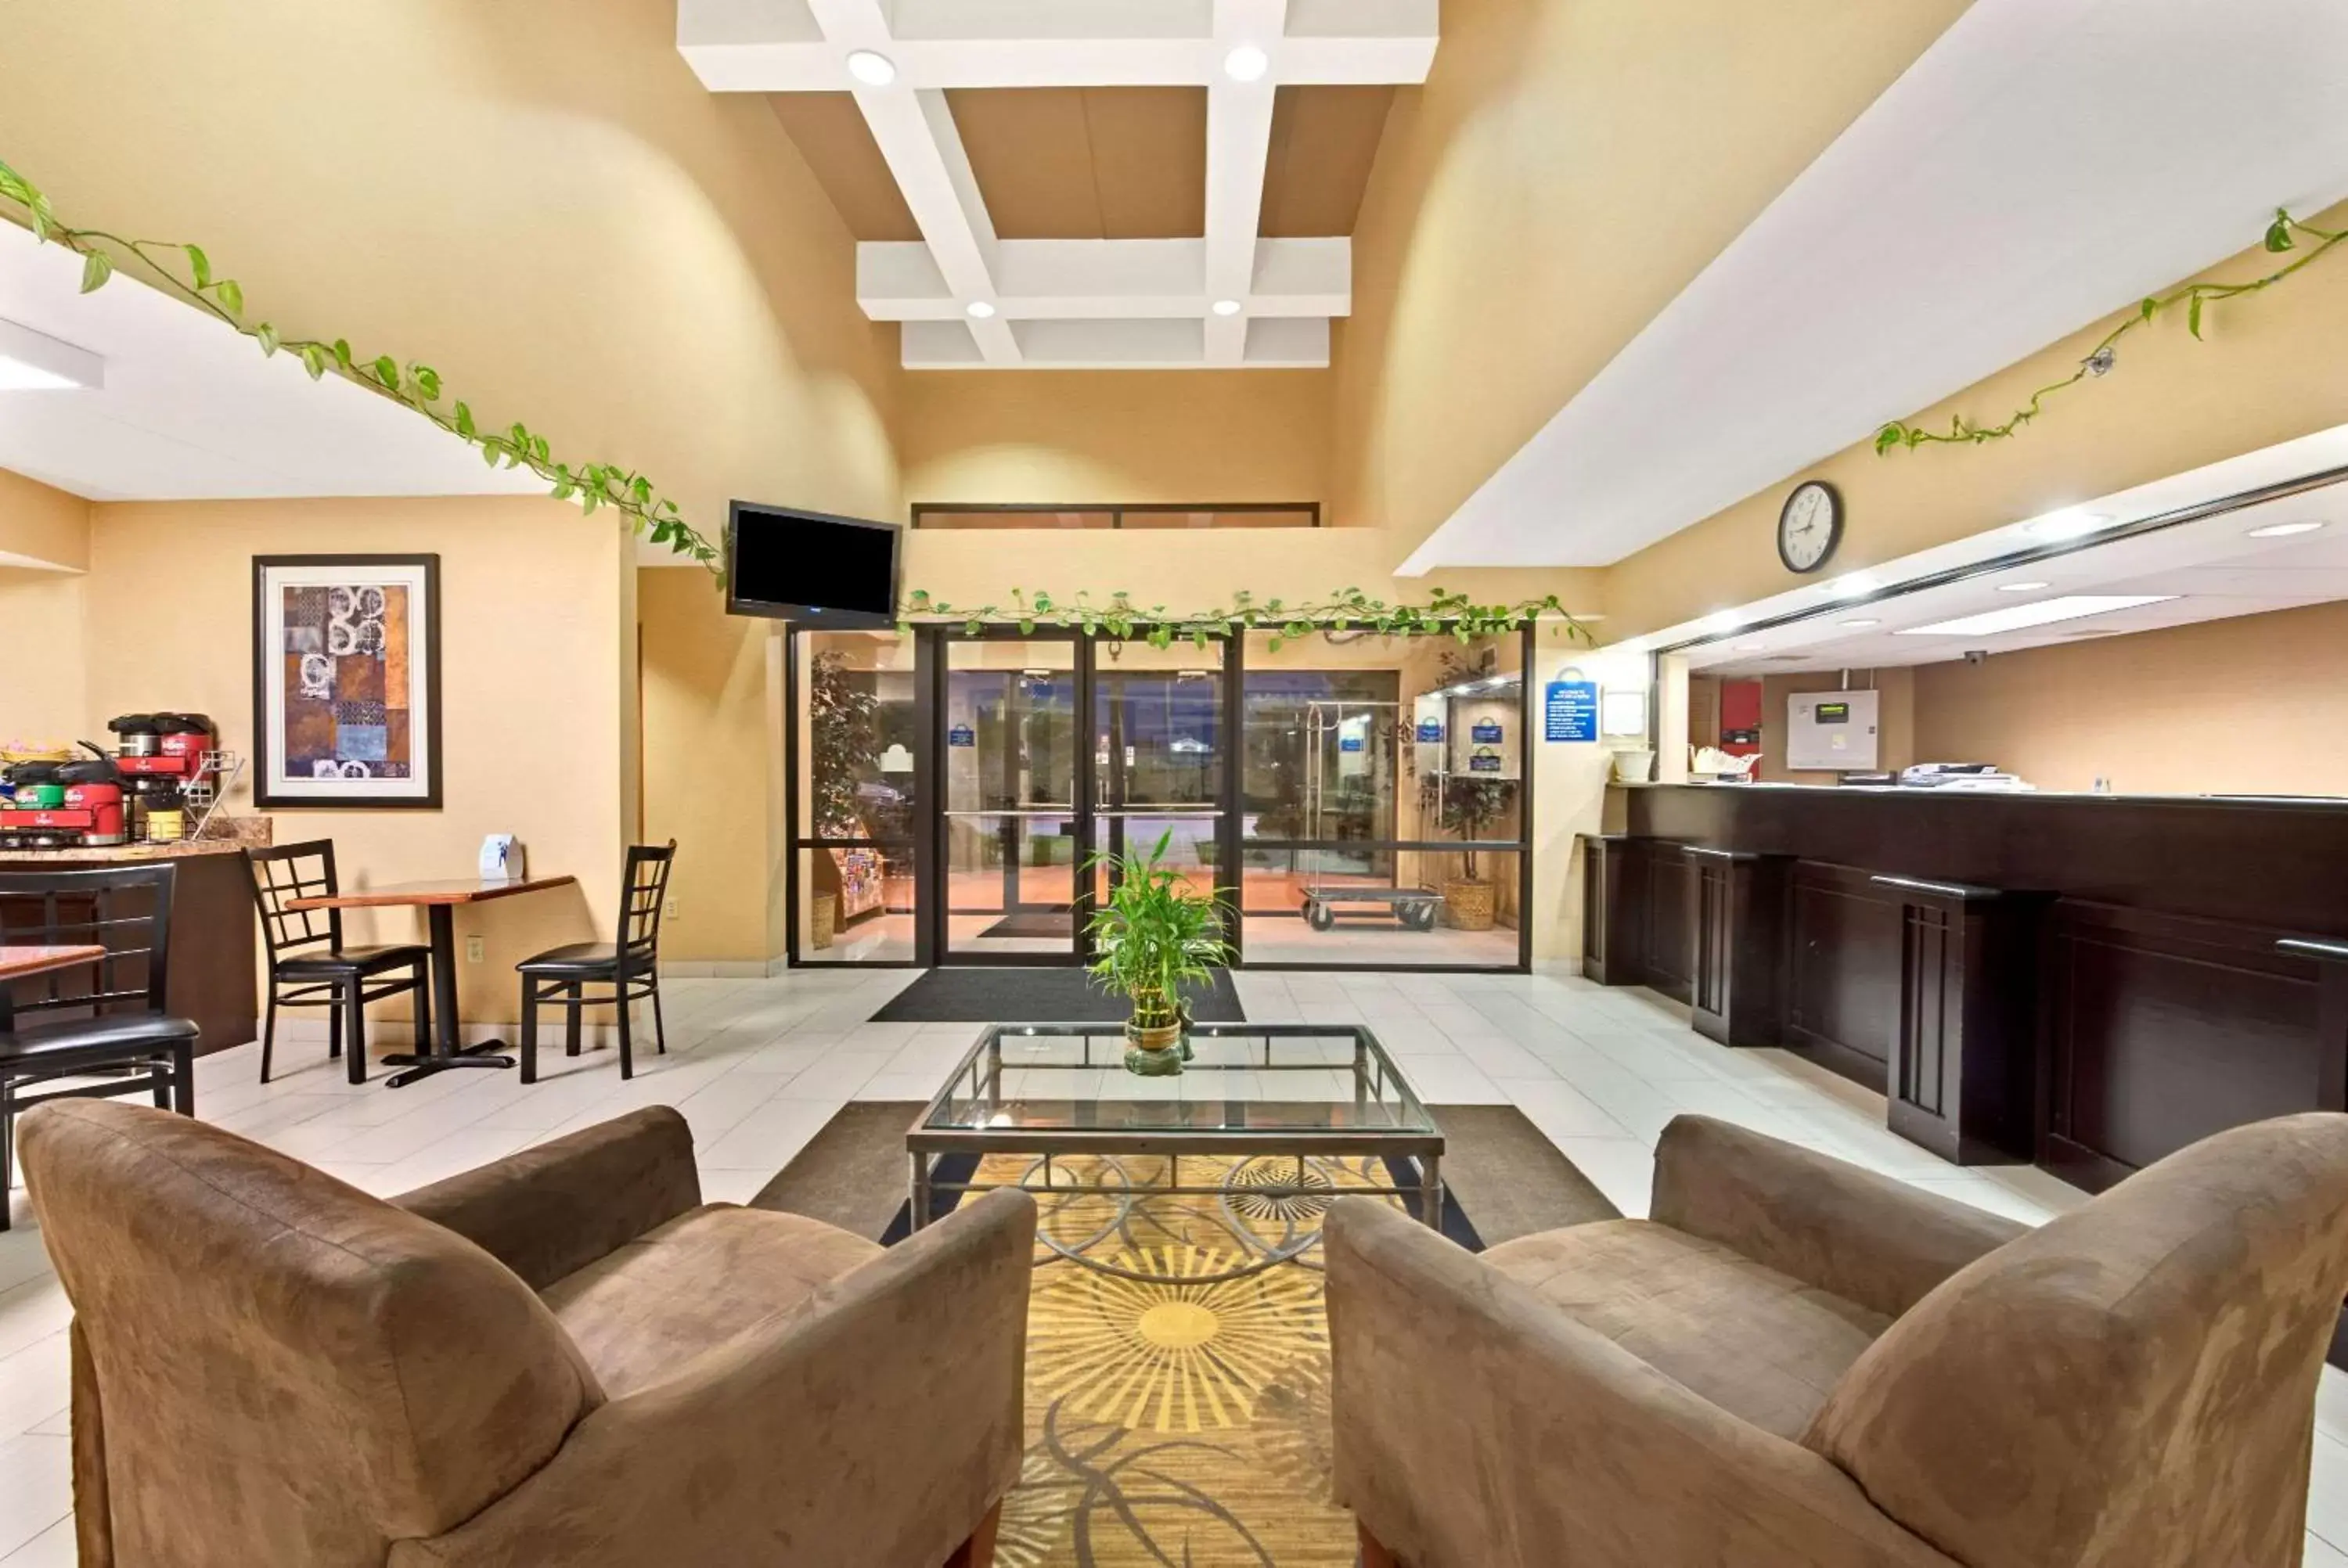 Lobby or reception, Lobby/Reception in Days Inn & Suites by Wyndham DeSoto